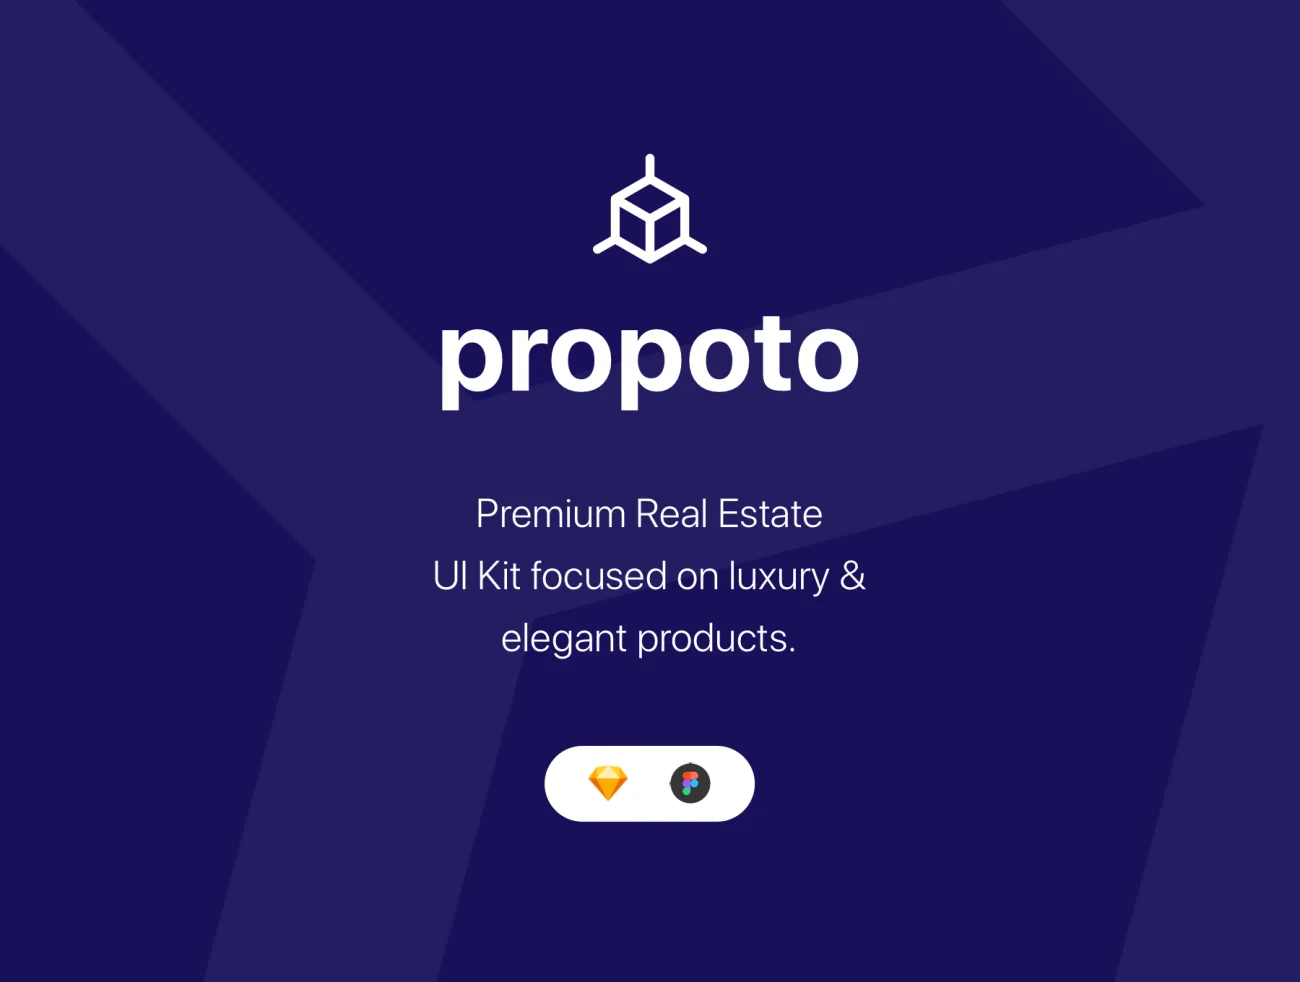 Propoto UI Kit 高端奢侈品房地产UI设计套件插图5